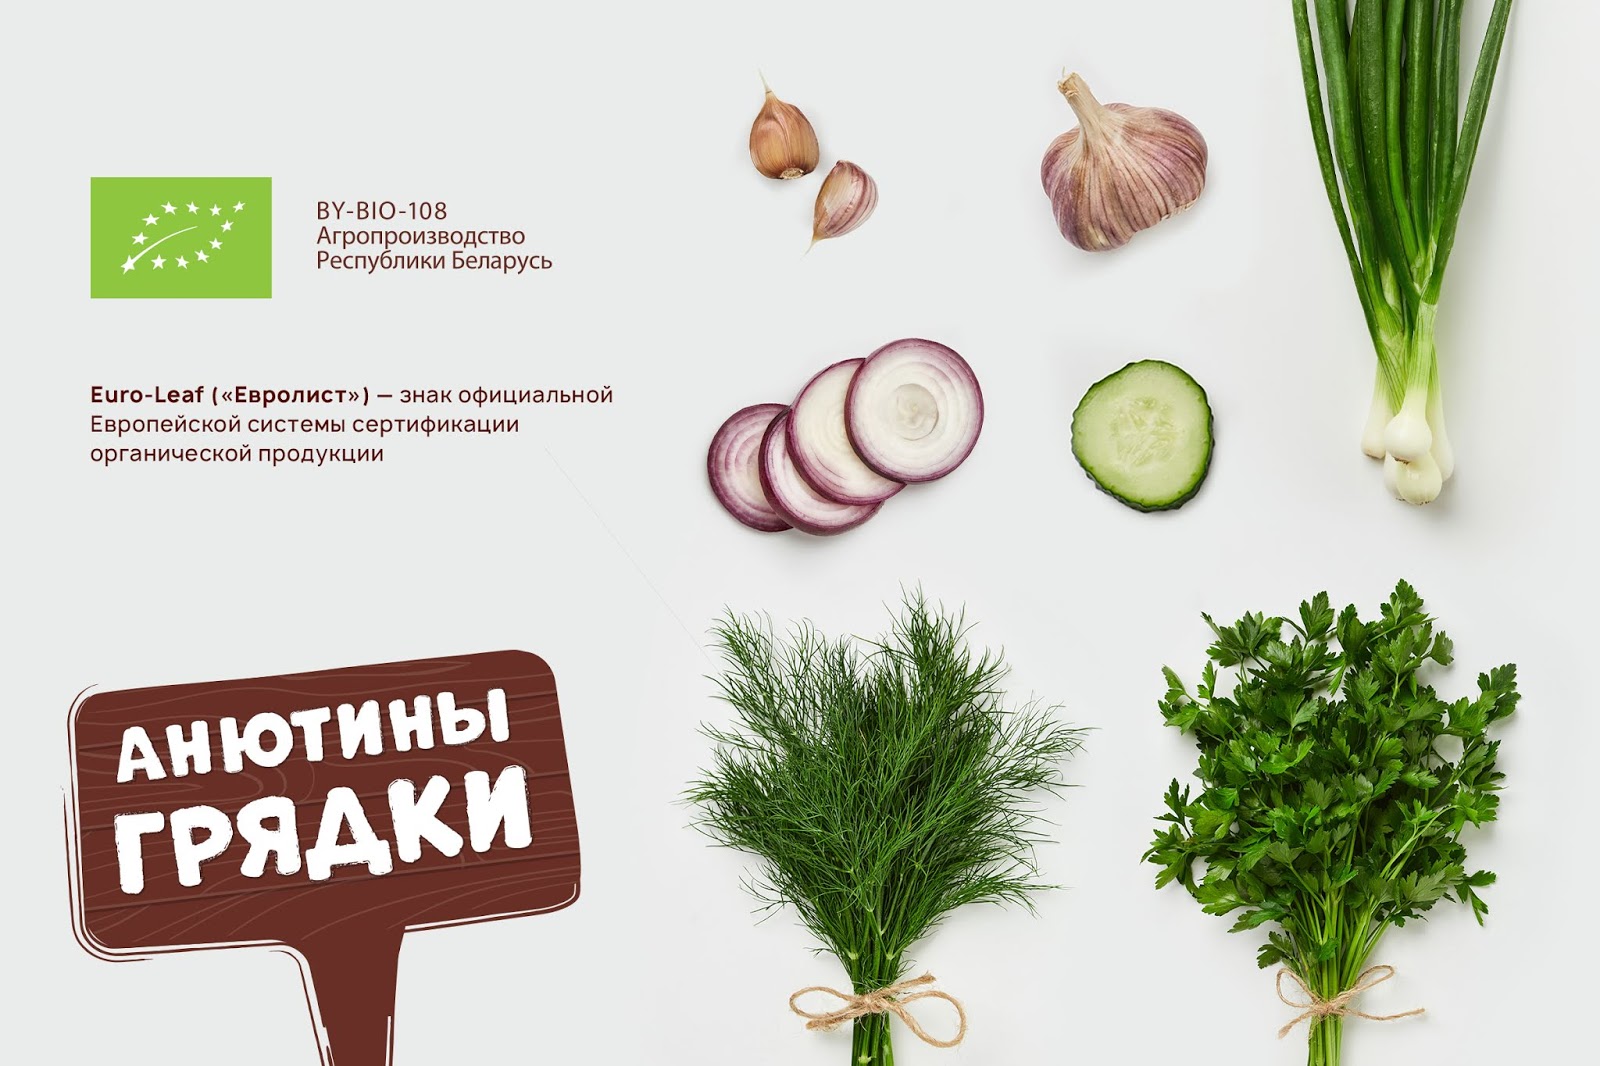 环保蔬菜西安四喜品牌包装设计